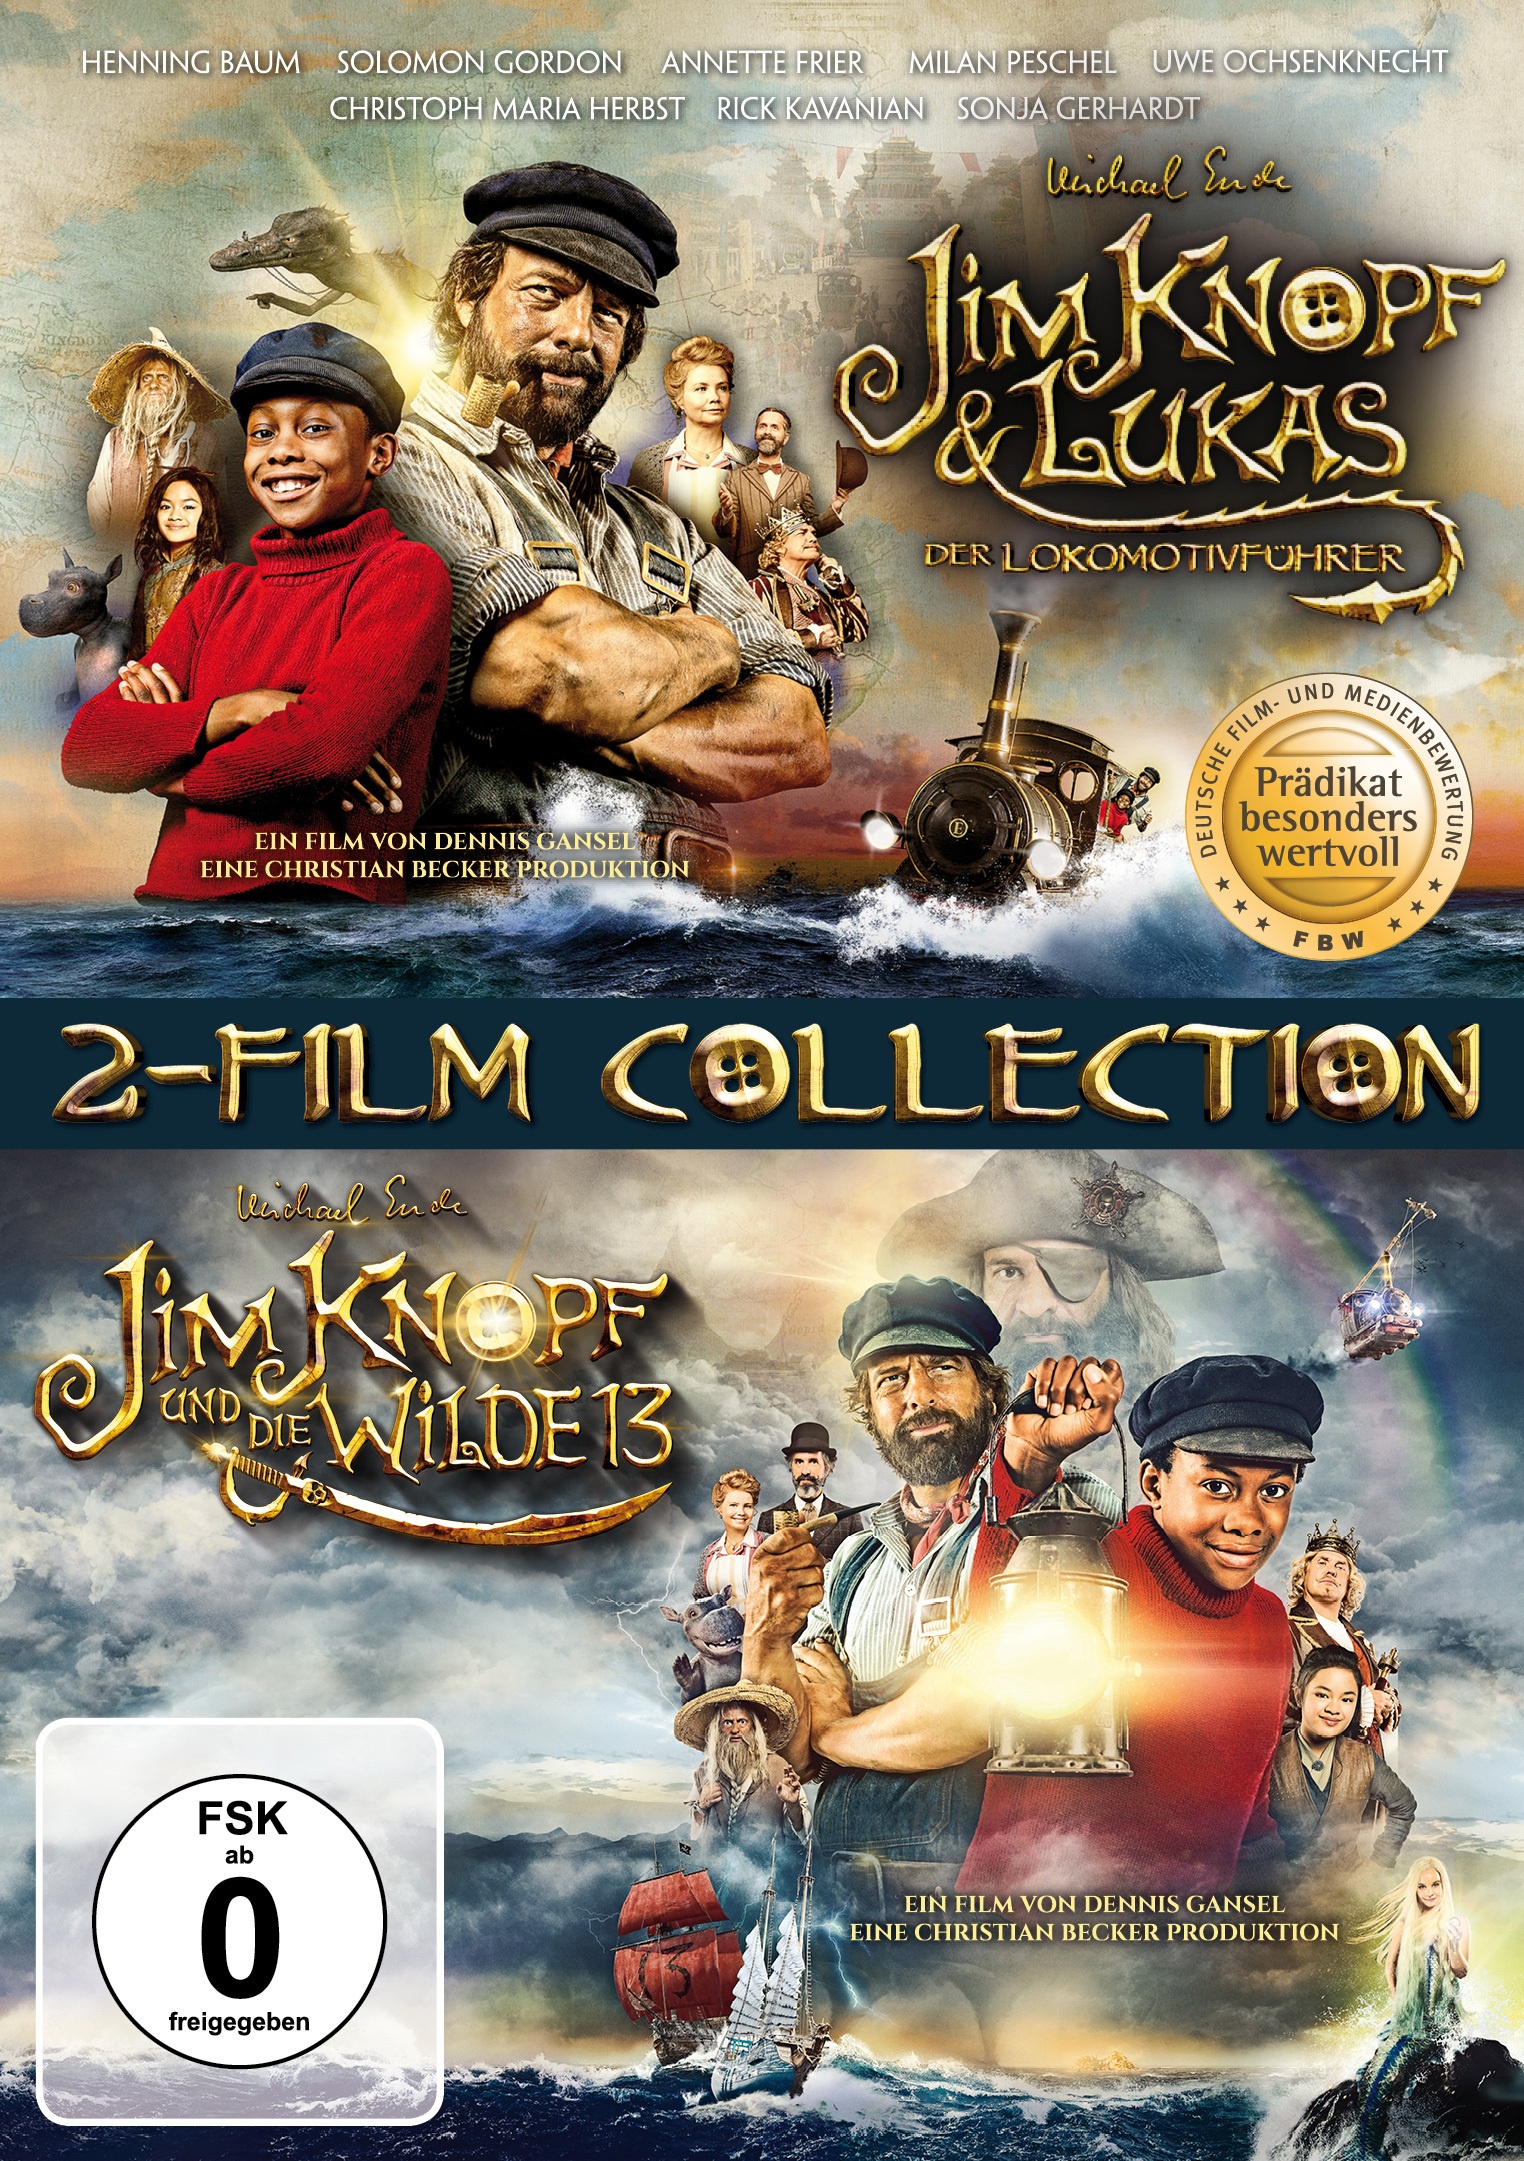 Jim Knopf & Lukas Der Lokomotivführer + Jim Knopf Und Die Wilde 13 (DVD)